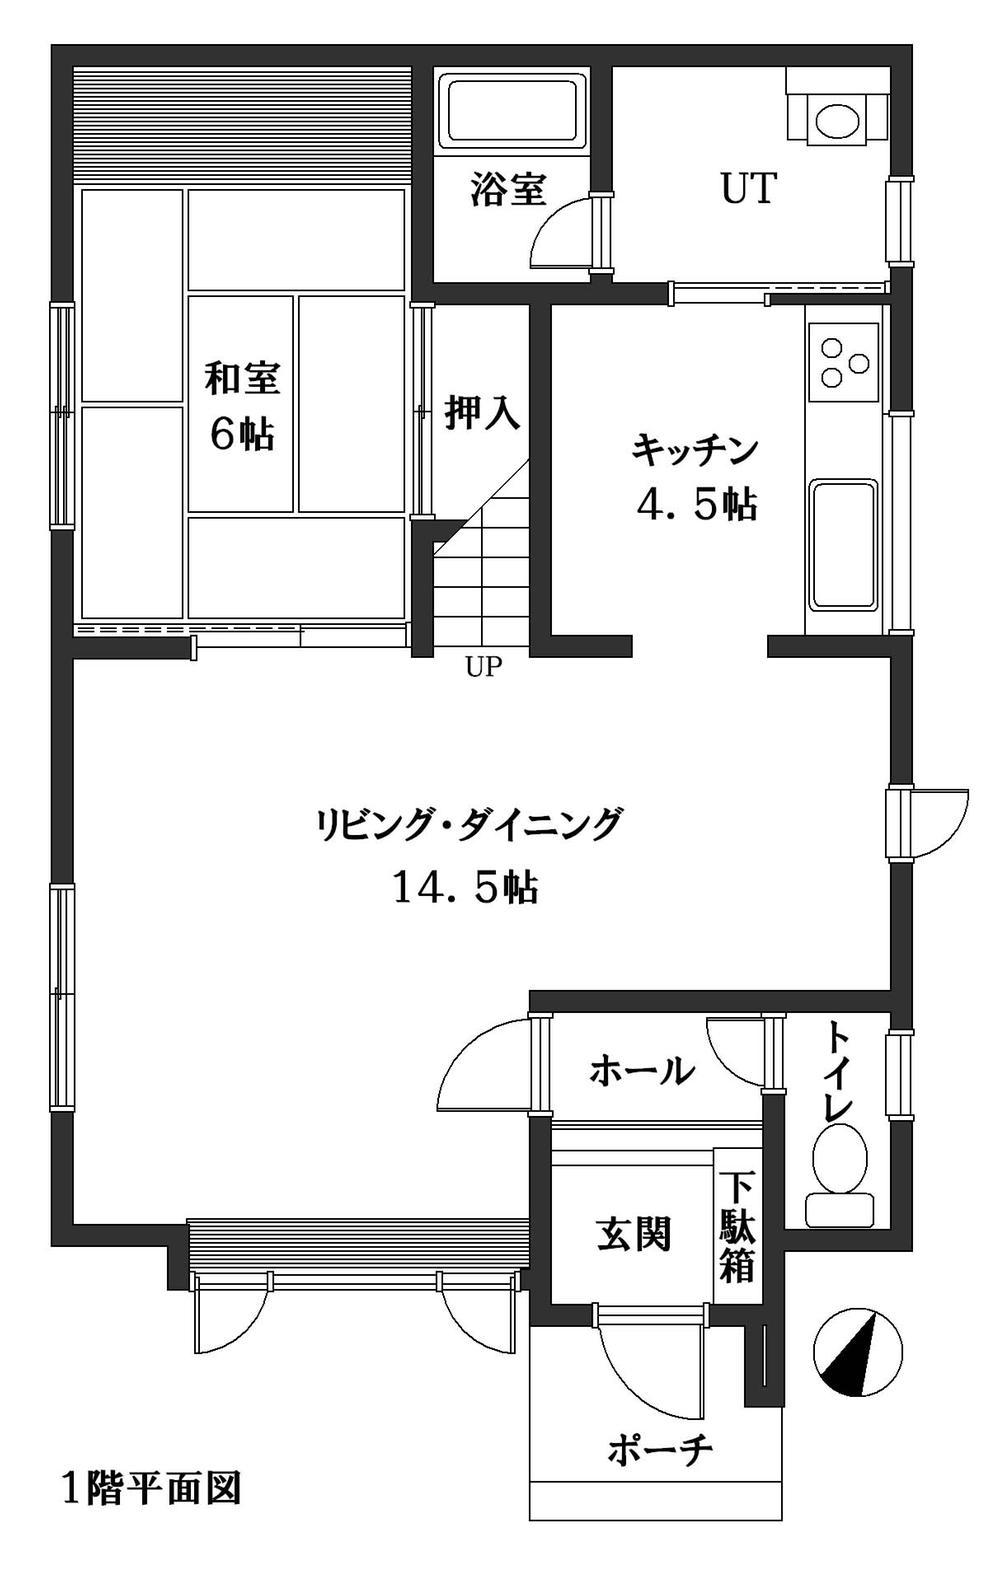 Floor plan. 7.6 million yen, 4LDK, Land area 183.29 sq m , Building area 108.75 sq m